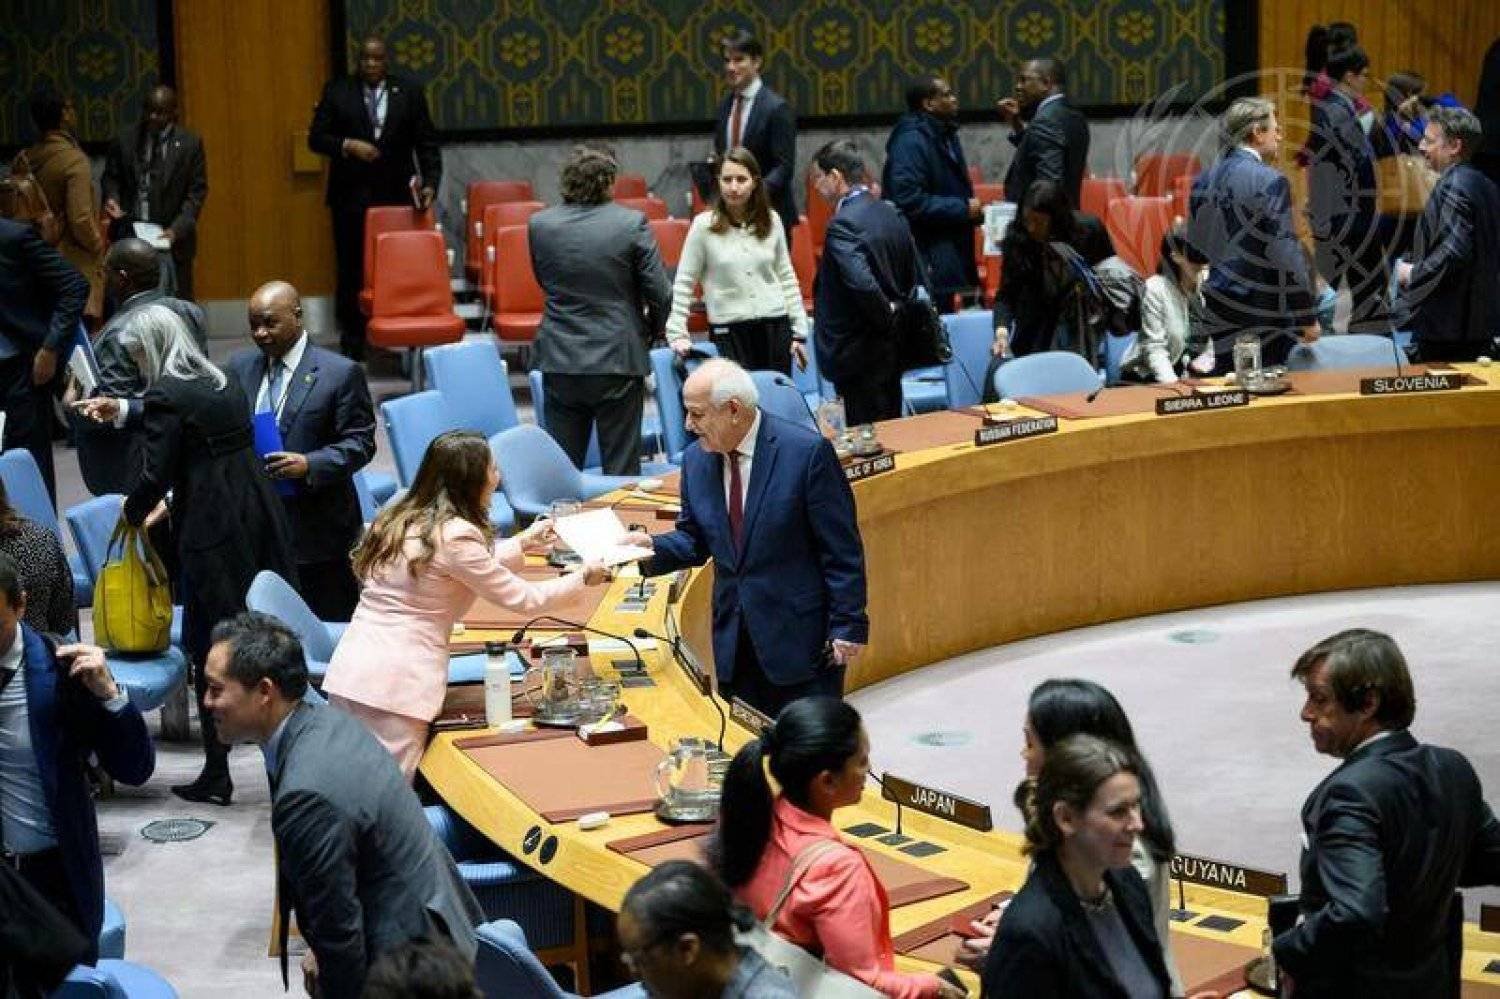 مندوب دولة فلسطين المراقبة رياض منصور يصافح رئيسة مجلس الأمن للشهر الجاري المندوبة المالطية فانيسا فرايزر (صور الأمم المتحدة)